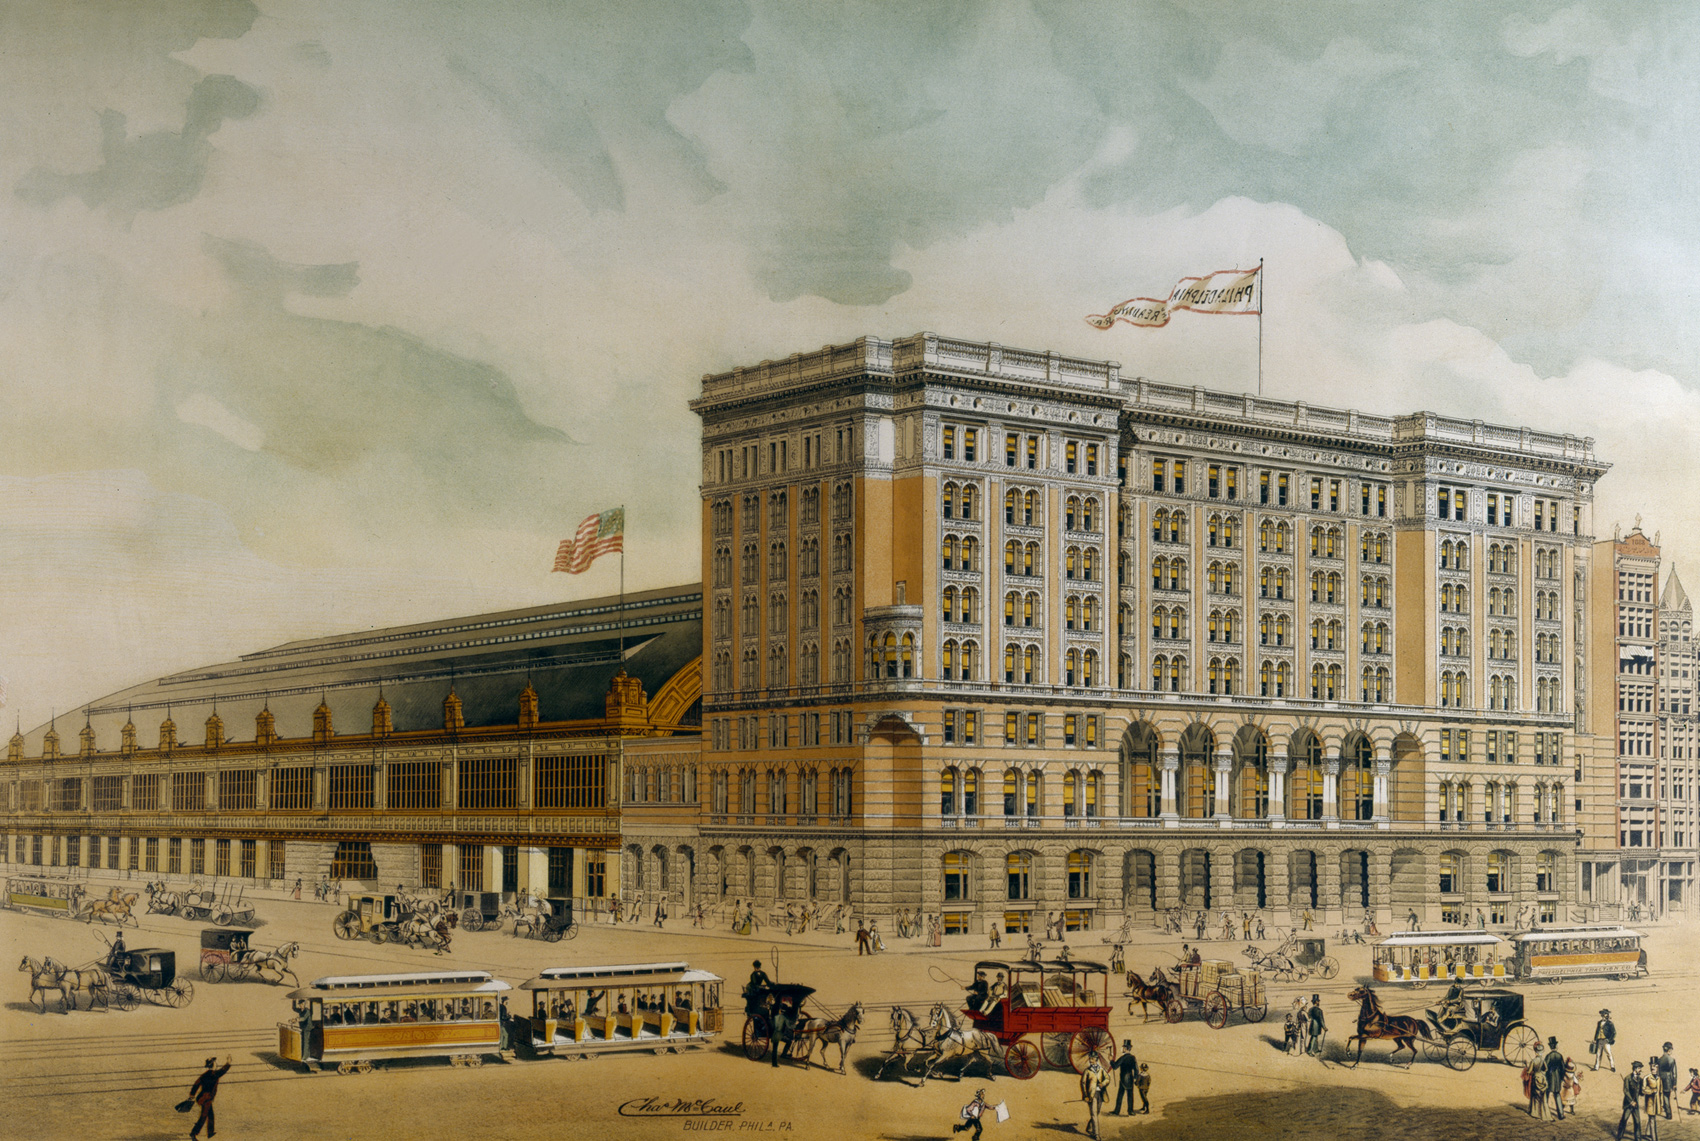 Reading terminal. Филадельфийский вокзал. Вокзал Филадельфия. Филадельфийский торговый музей 1893 года. Пенсильванская железная дорога здание.